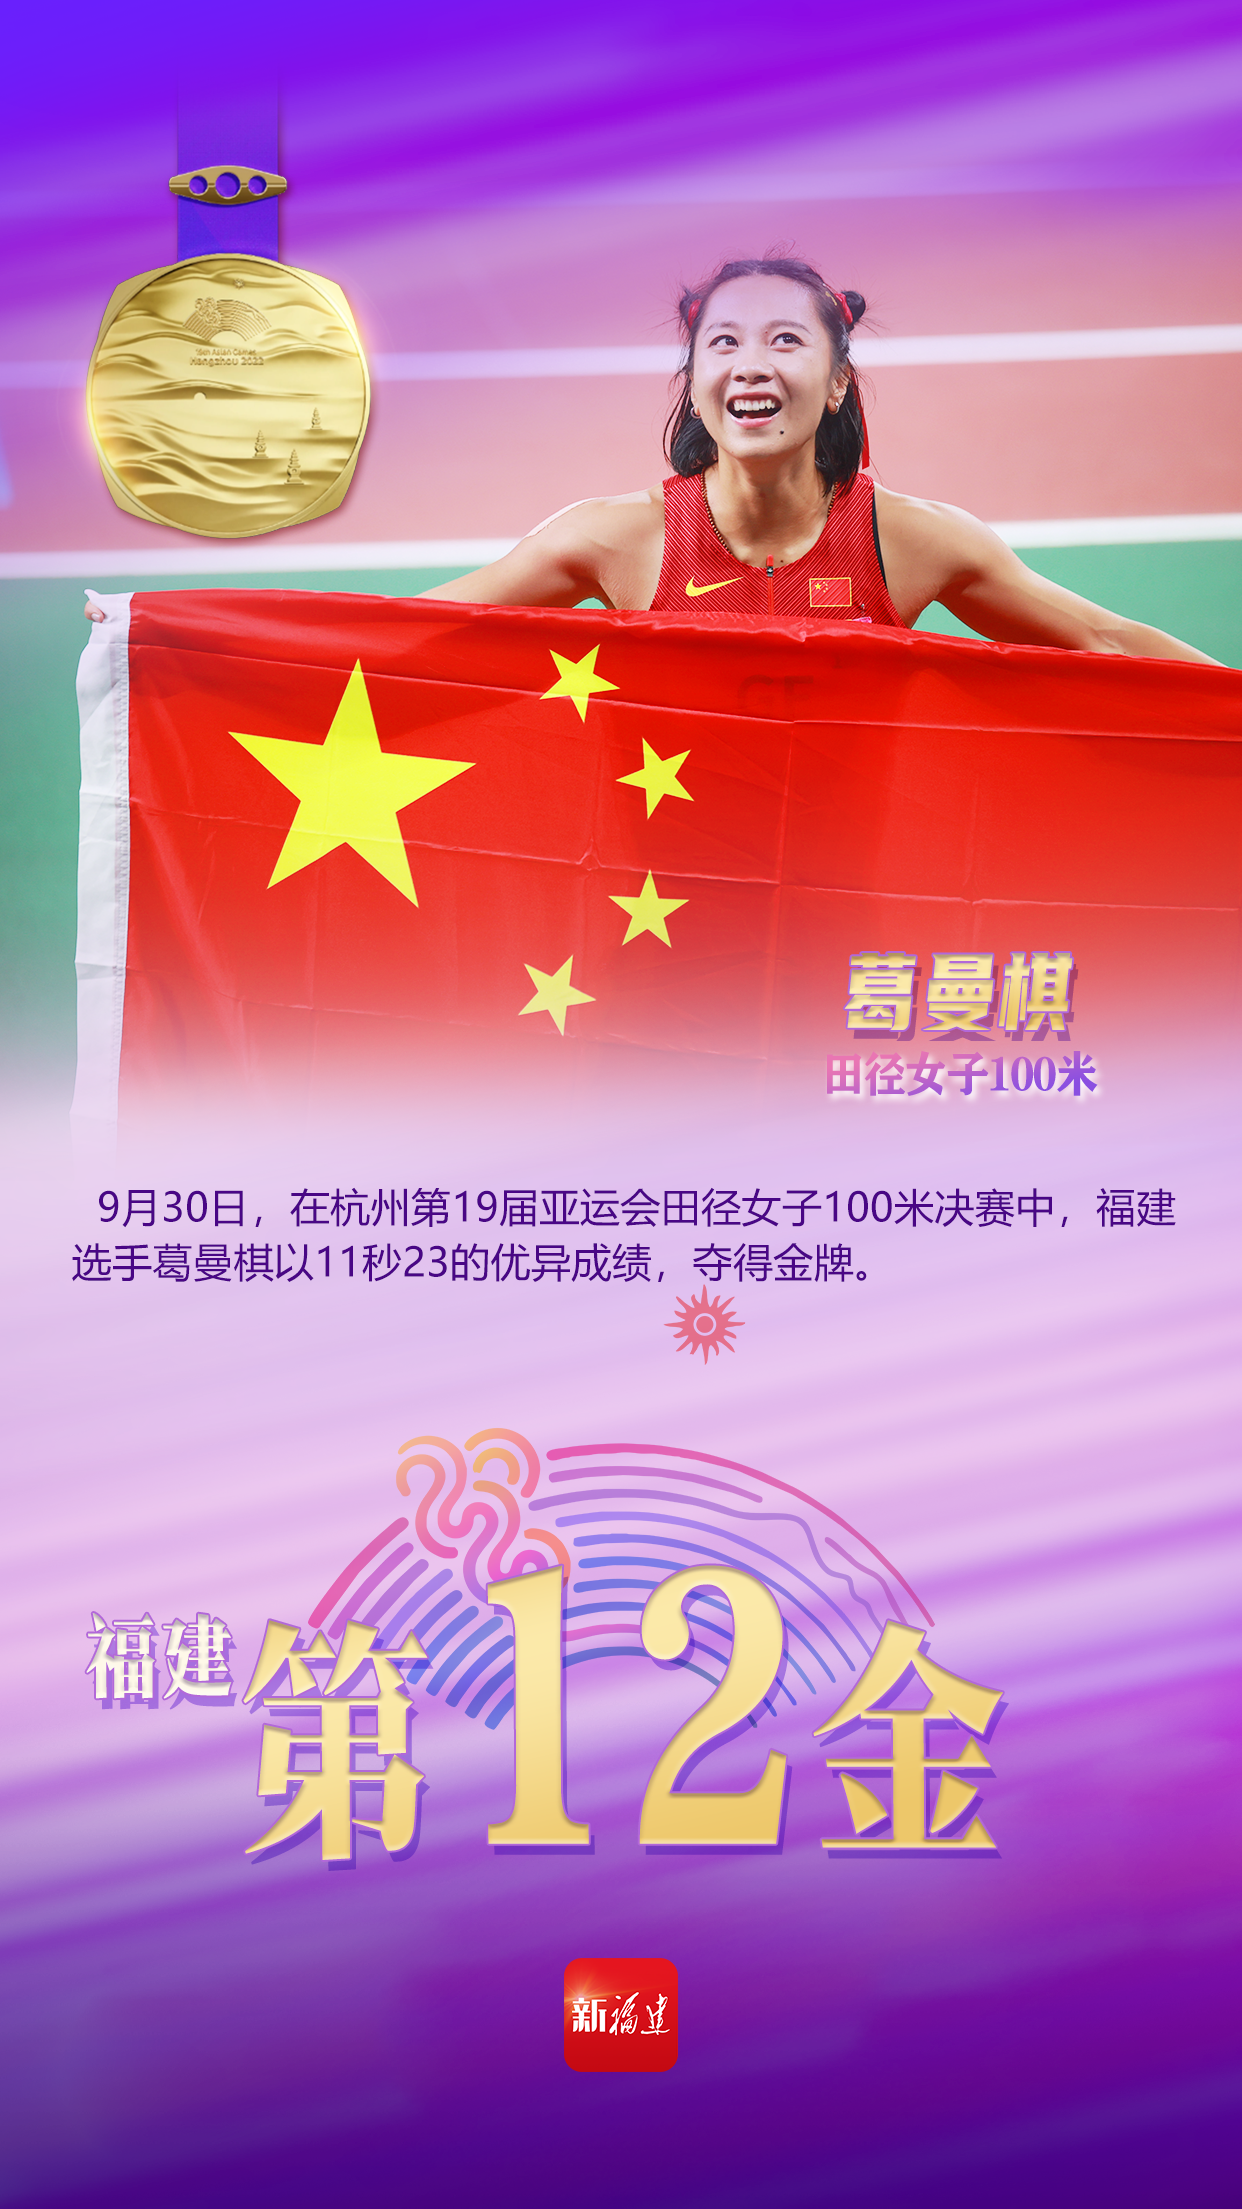 葛曼棋夺得杭州亚运会女子100米金牌